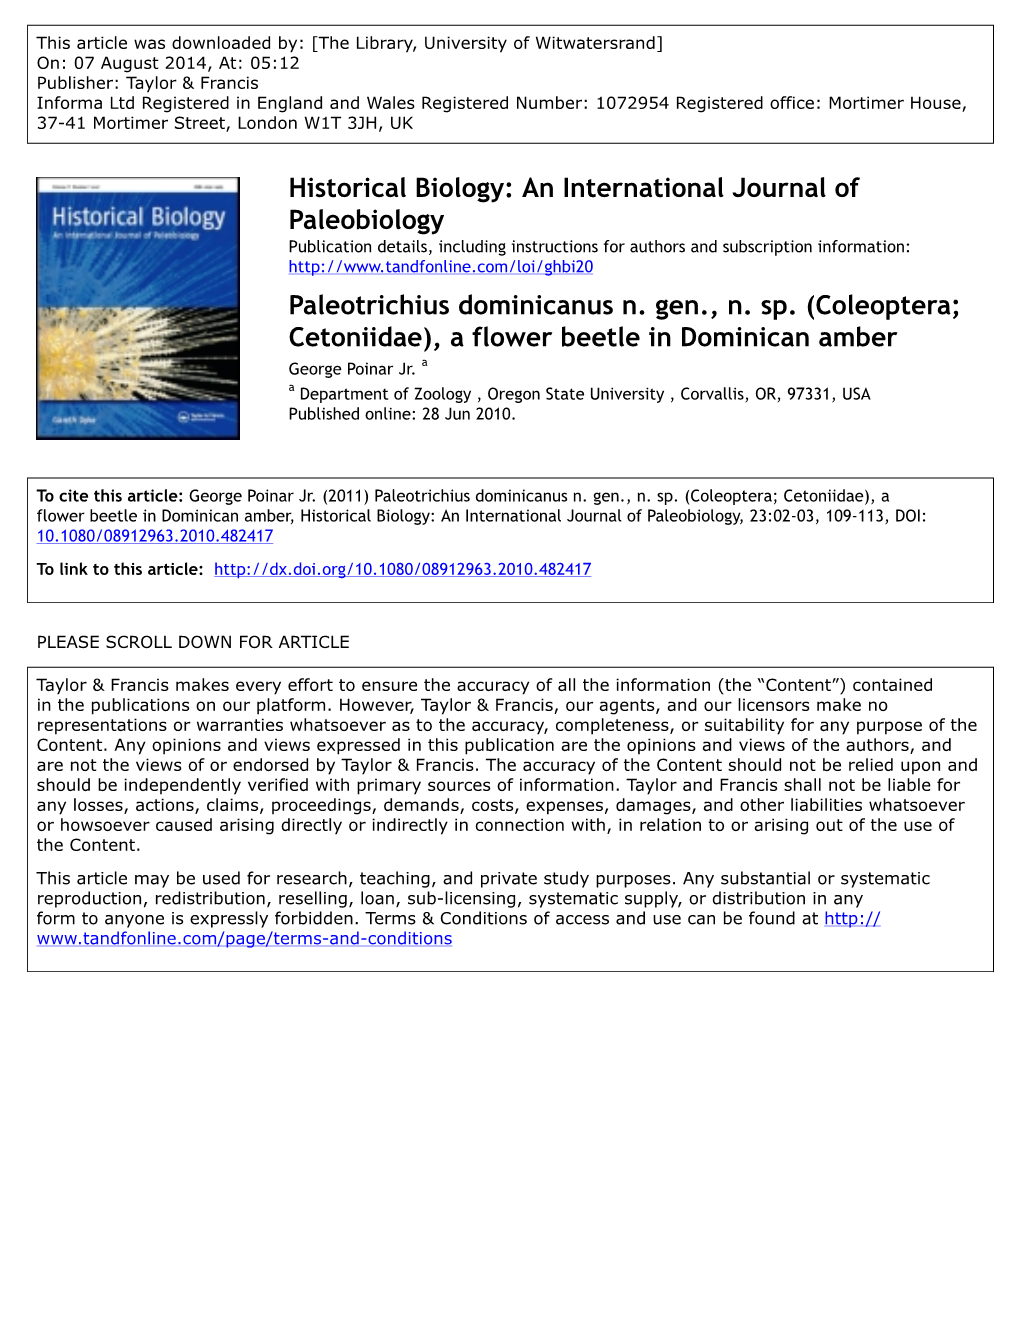 Historical Biology: an International Journal of Paleobiology